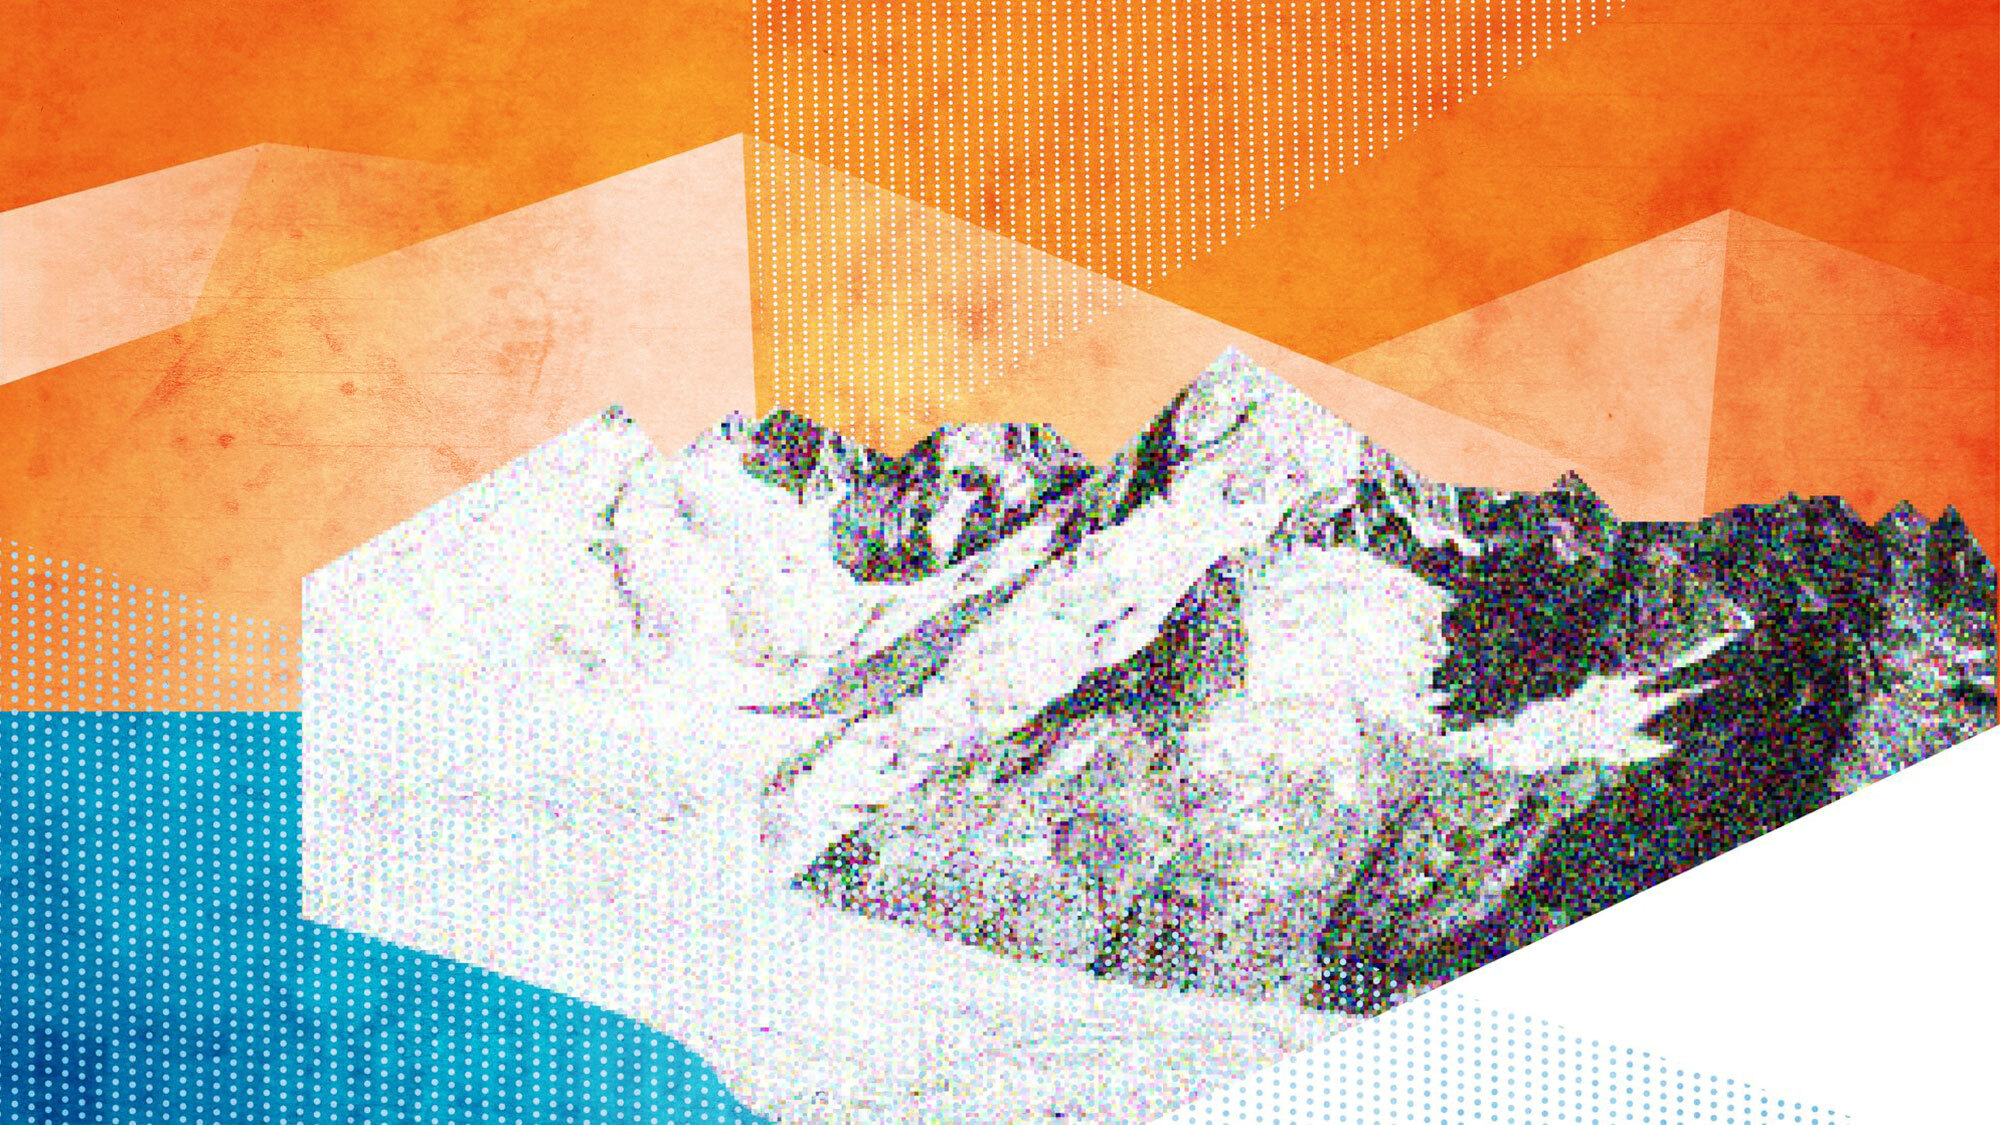 Berge in Bewegung – Alpen in Gefahr?